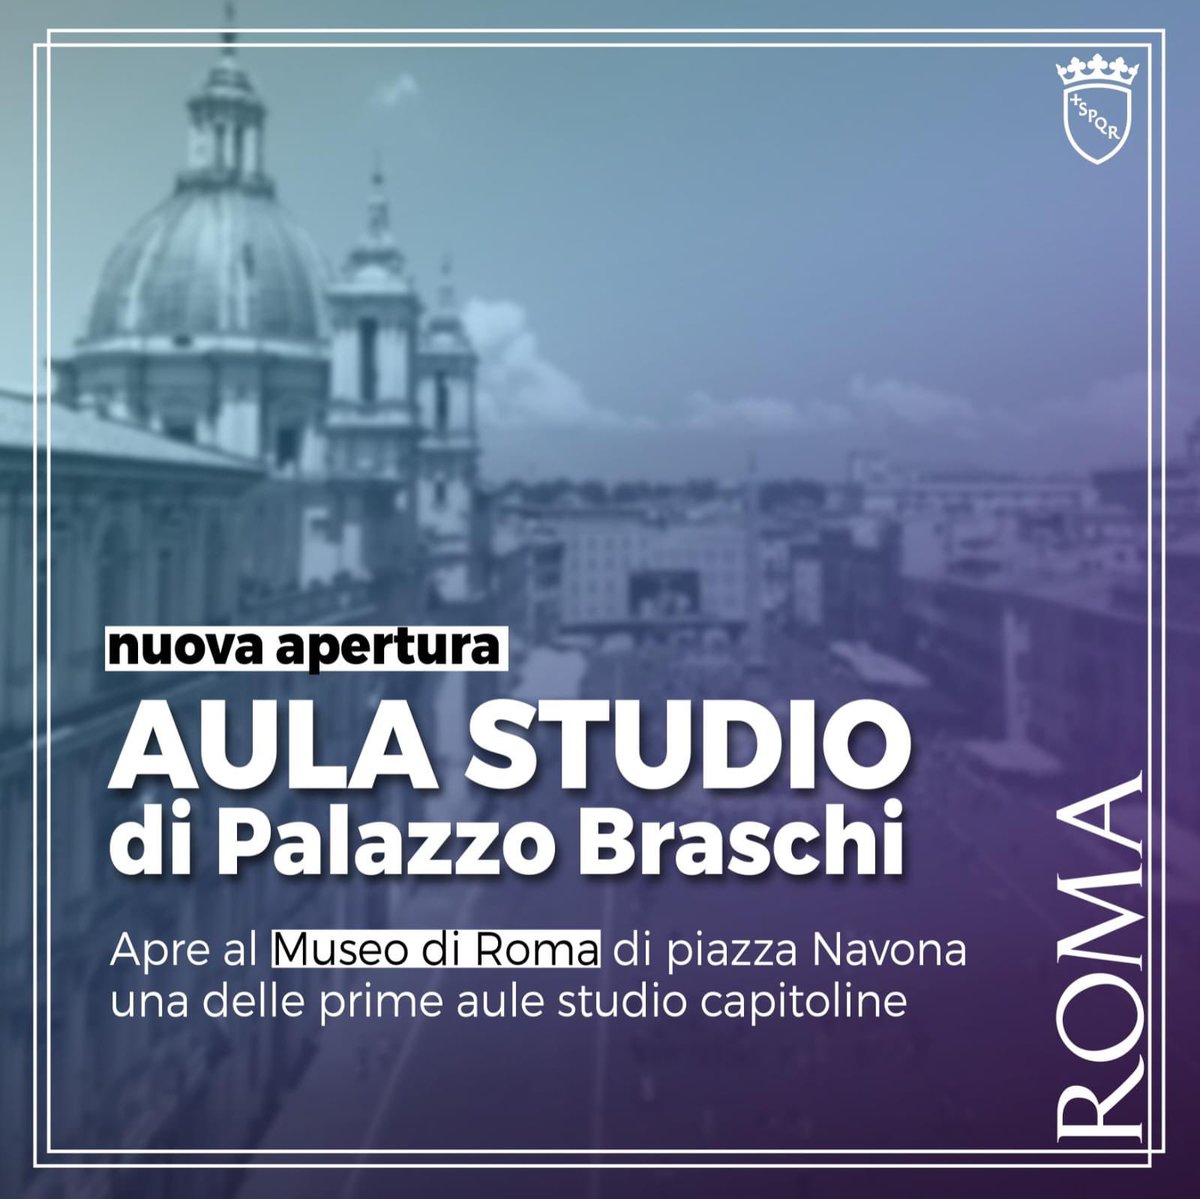 Apre la nuova Aula Studio di Palazzo Braschi! Ad accesso libero e gratuito *anche il fine settimana*, in linea con gli orari di Museo di Roma. Per maggiori informazioni: bit.ly/3GThWHy